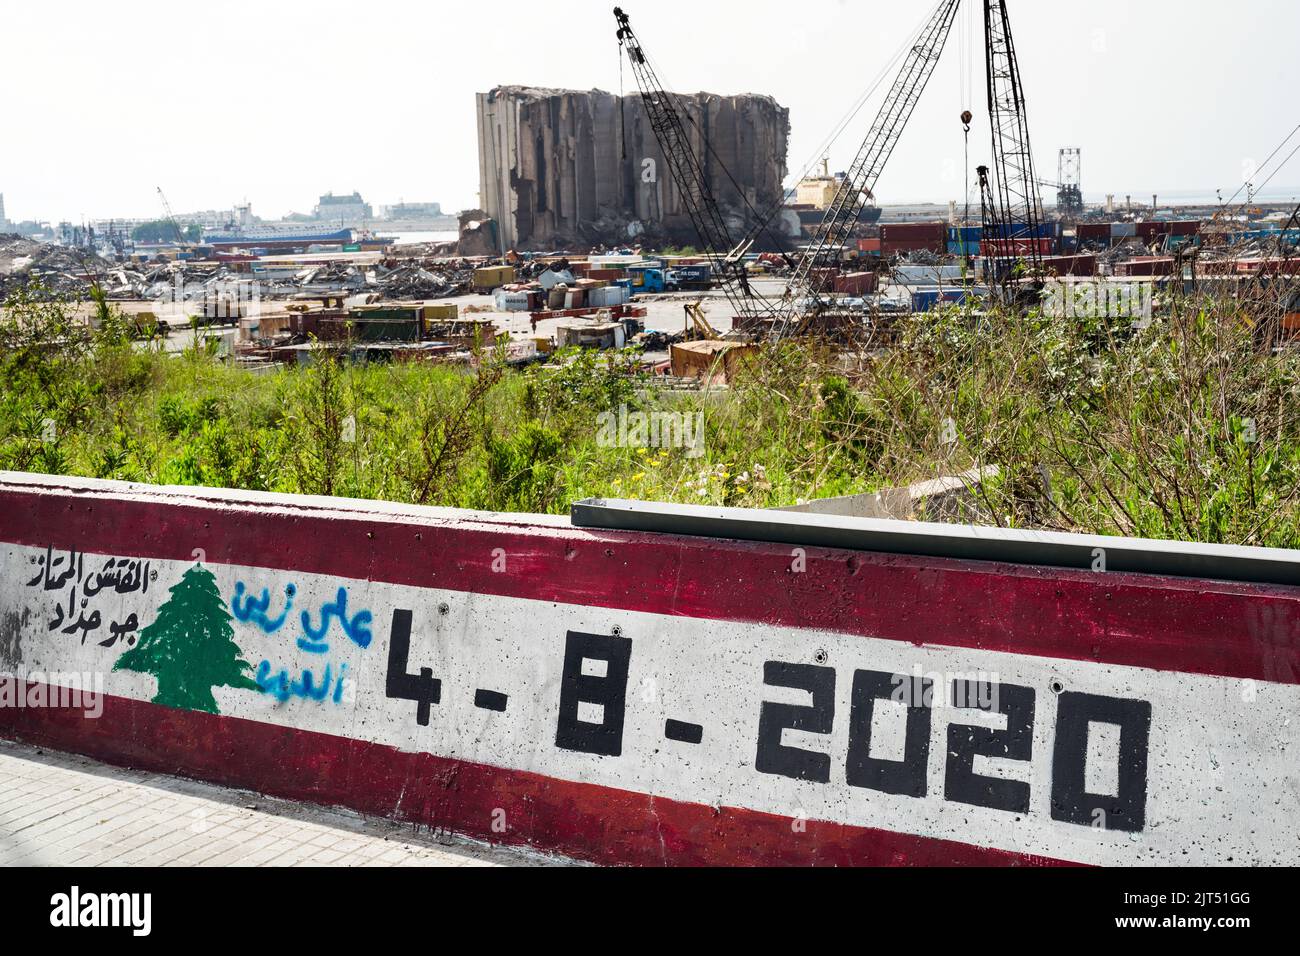 Beirut, Líbano: Graffiti en la pared del puerto que muestra los silos de grano destruidos por la explosión masiva de 2.750 toneladas de nitrato de amonio almacenadas en el puerto de la ciudad que devastó el puerto y la ciudad el 8/4/2020 Foto de stock